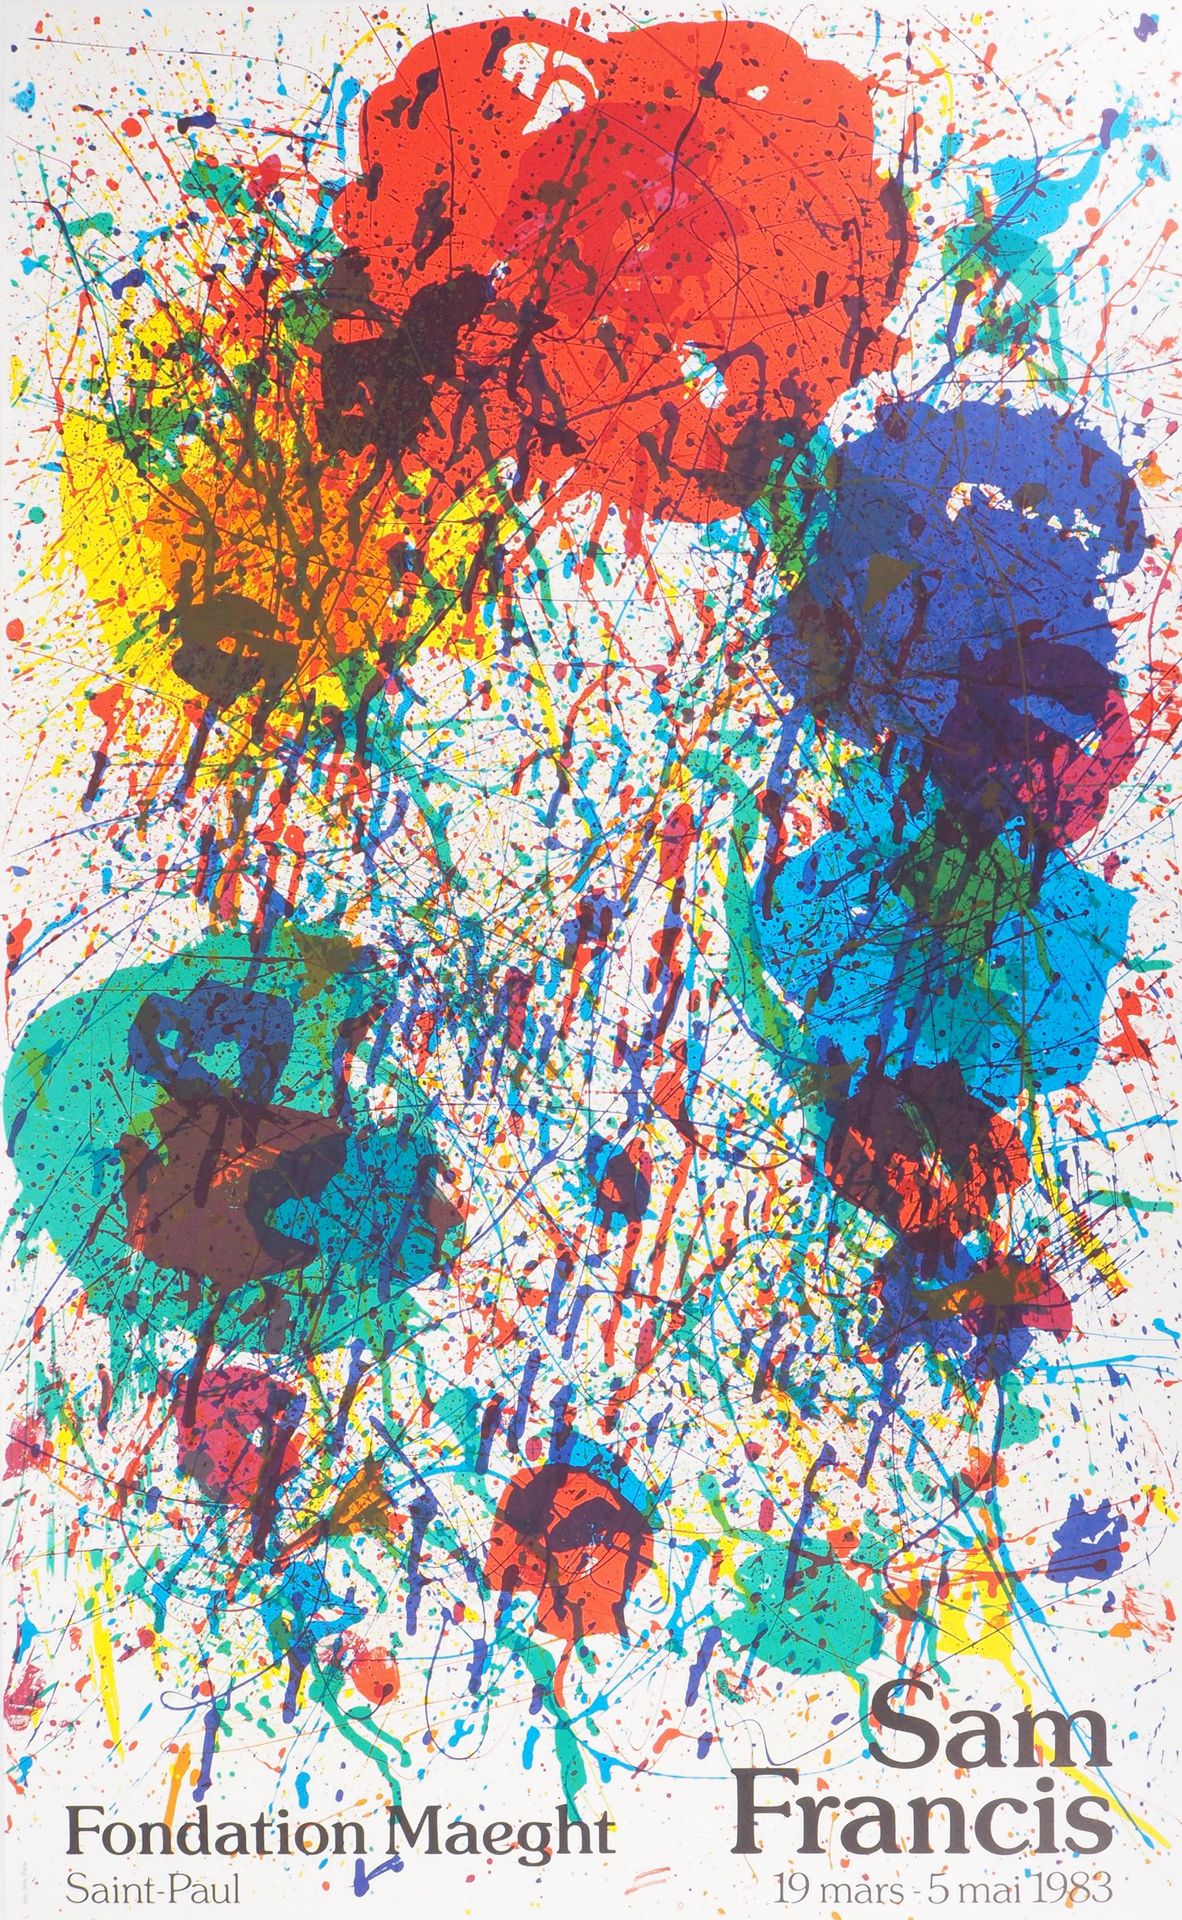 Sam FRANCIS Sam FRANCIS

Esplosione di colori

Poster litografico originale dell&hellip;